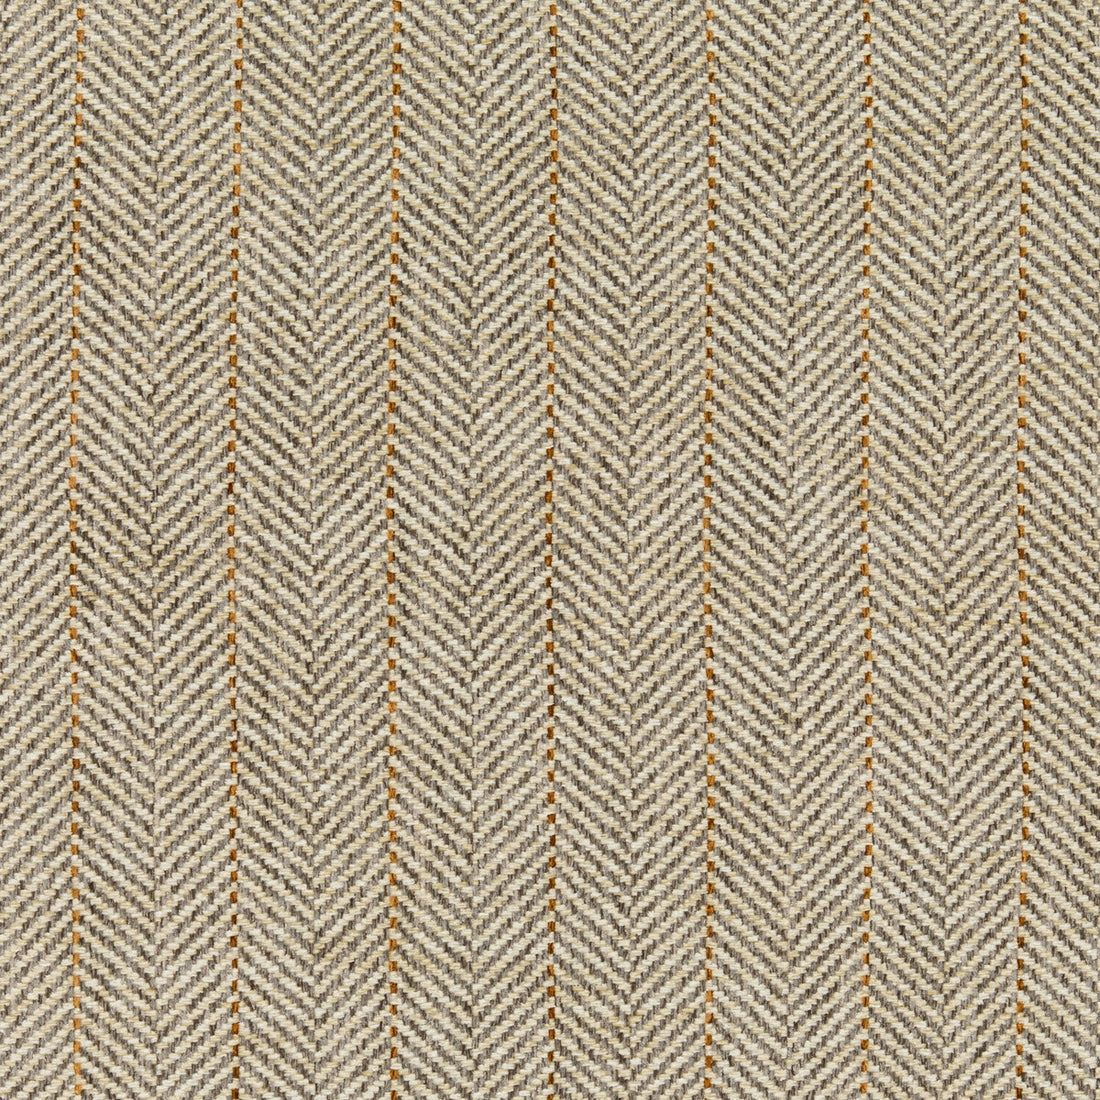 Kravet Basics fabric in 35776-11 color - pattern 35776.11.0 - by Kravet Basics